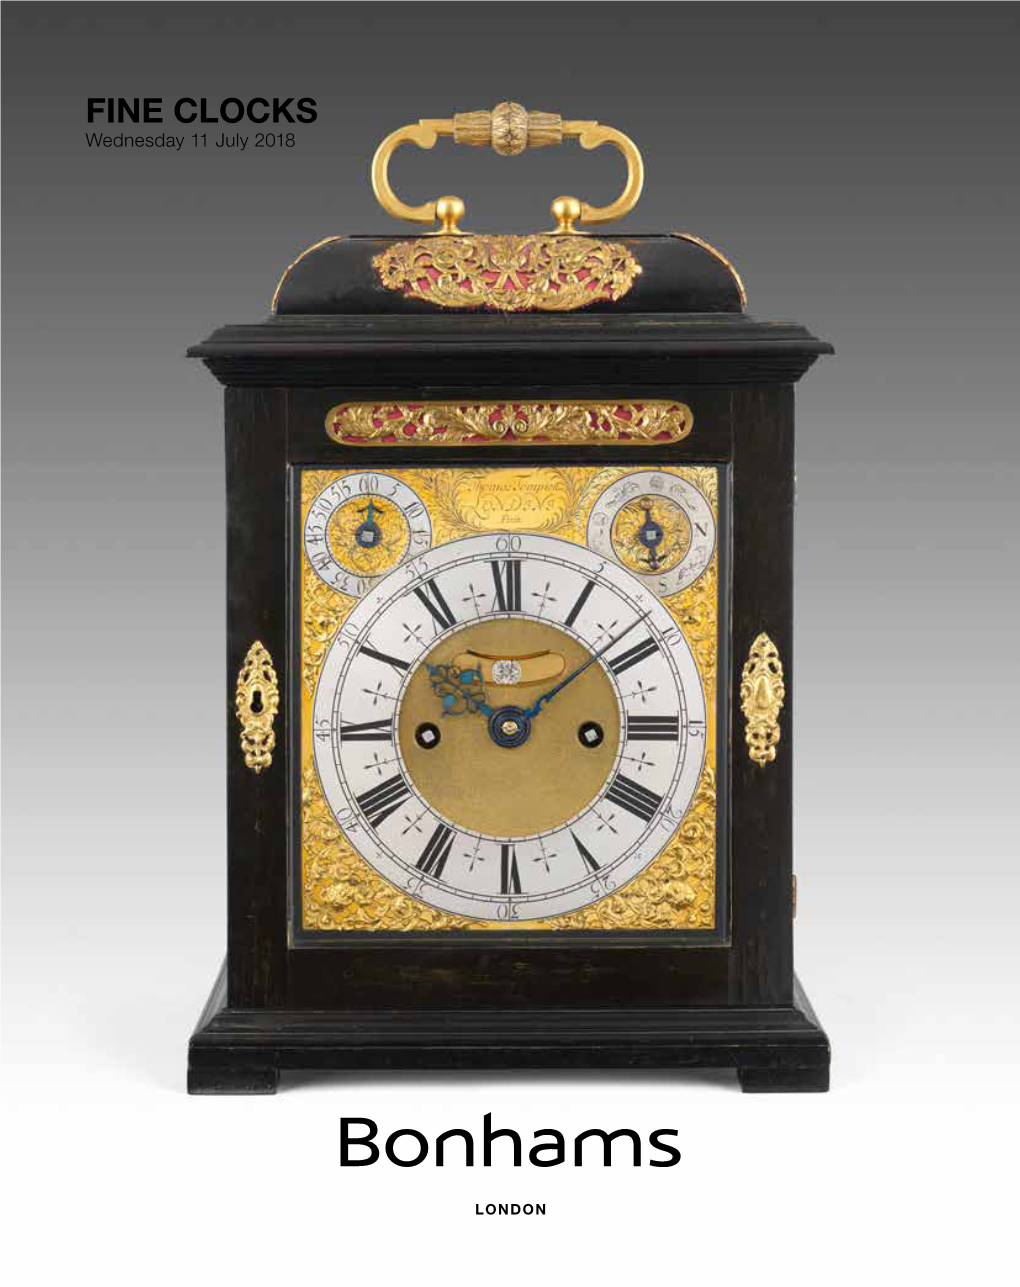 FINE CLOCKS Wednesday 11 July 2018 Bonhams 1793 Limited Bonhams International Board Bonhams UK Ltd Directors Registered No